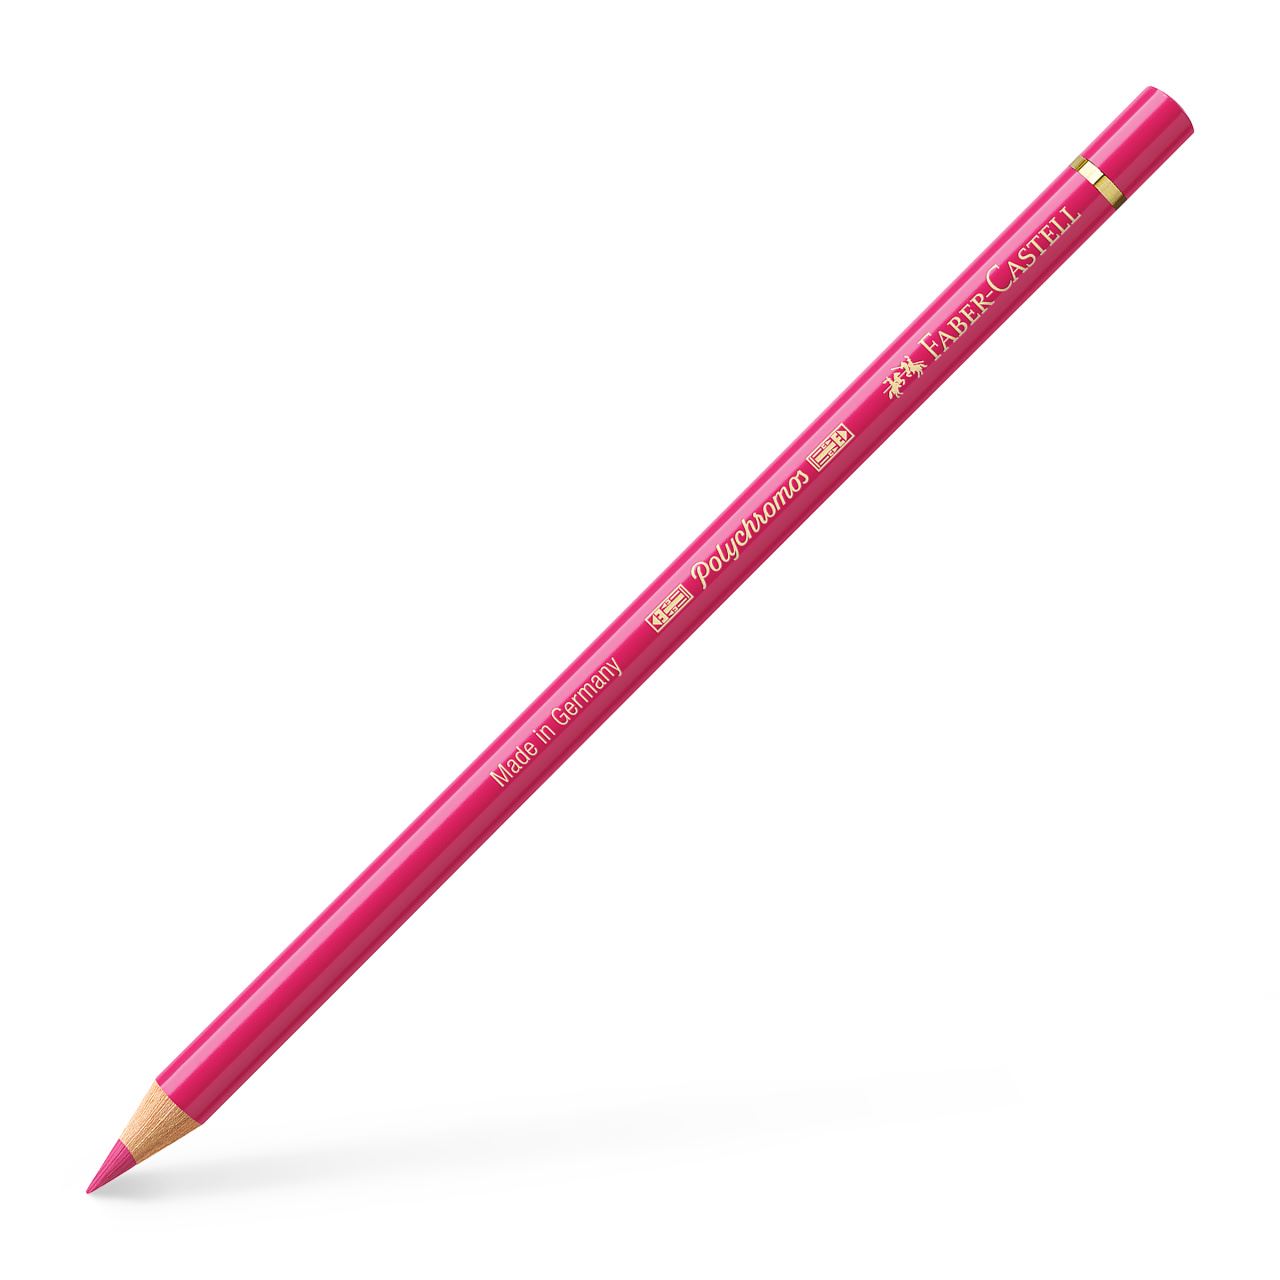 Faber-Castell - Polychromos colour pencil, 124 rose carmine